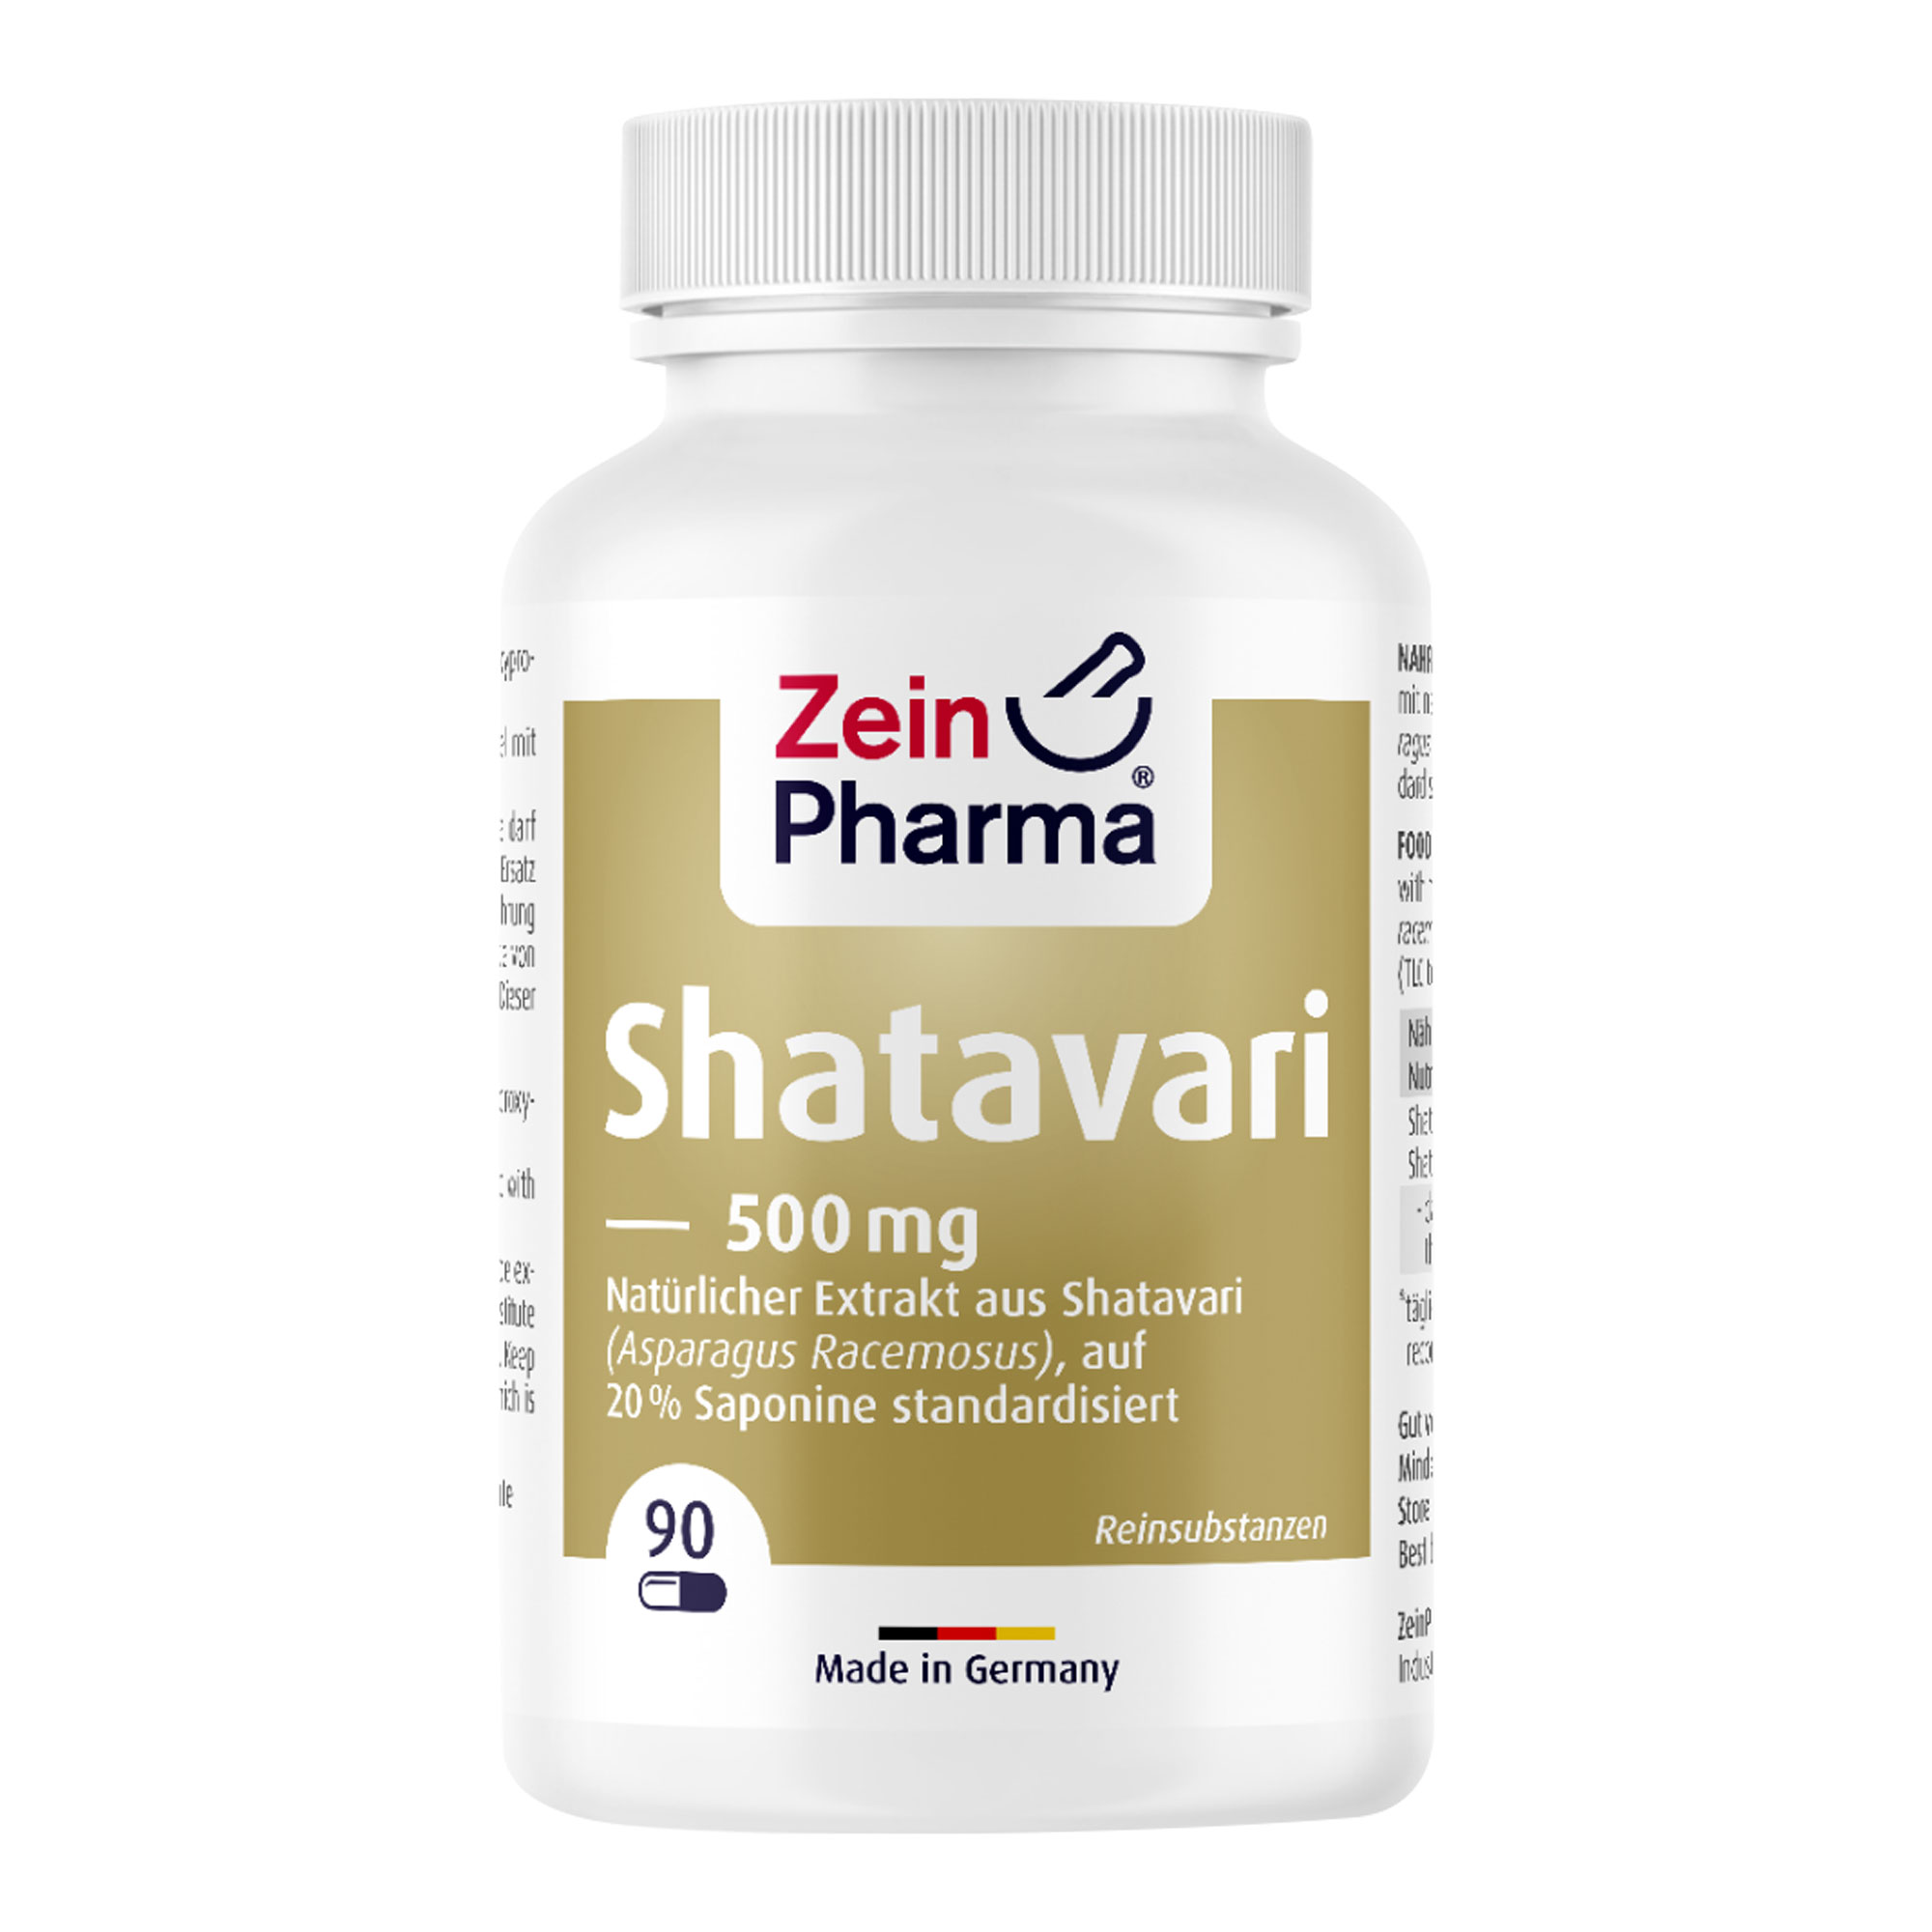 Nahrungsergänzungsmittel mit natürlichem Extrakt aus Shatavari, auf 20 % Saponine standardisiert (TLC-geprüft).